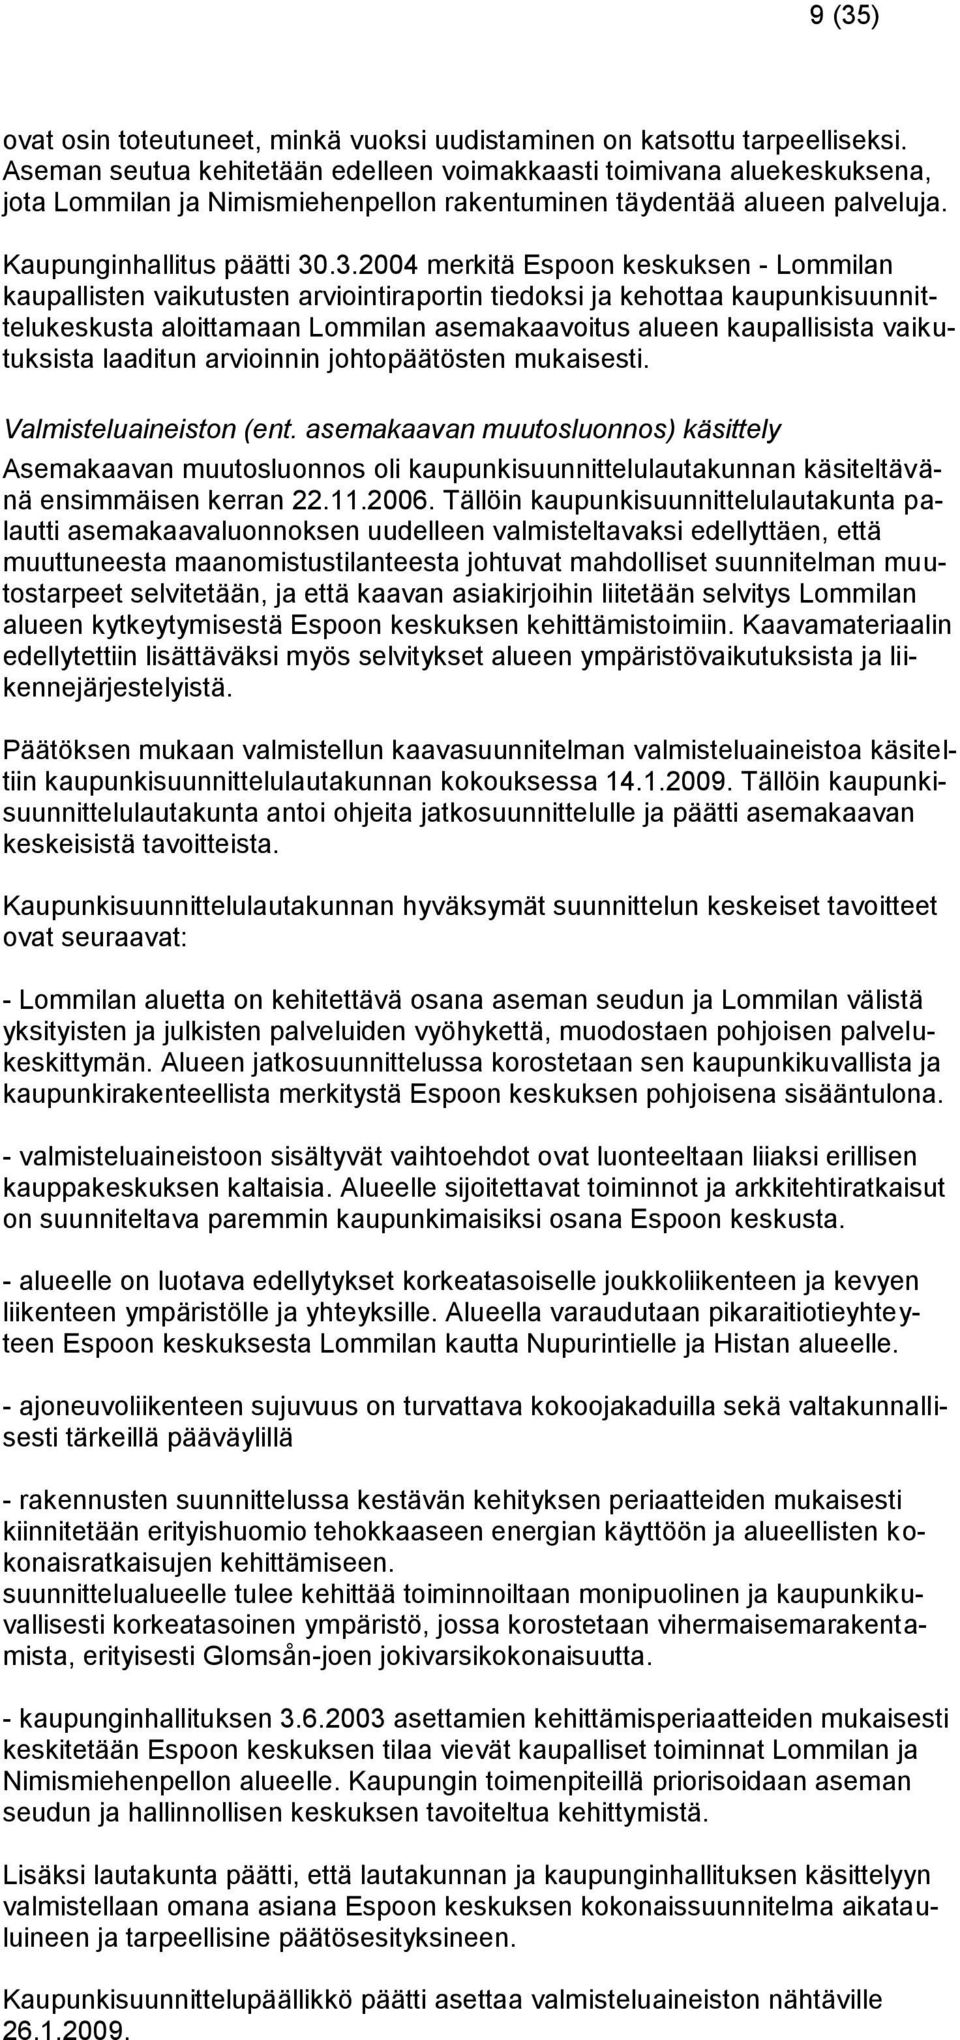 .3.2004 merkitä Espoon keskuksen - Lommilan kaupallisten vaikutusten arviointiraportin tiedoksi ja kehottaa kaupunkisuunnittelukeskusta aloittamaan Lommilan asemakaavoitus alueen kaupallisista